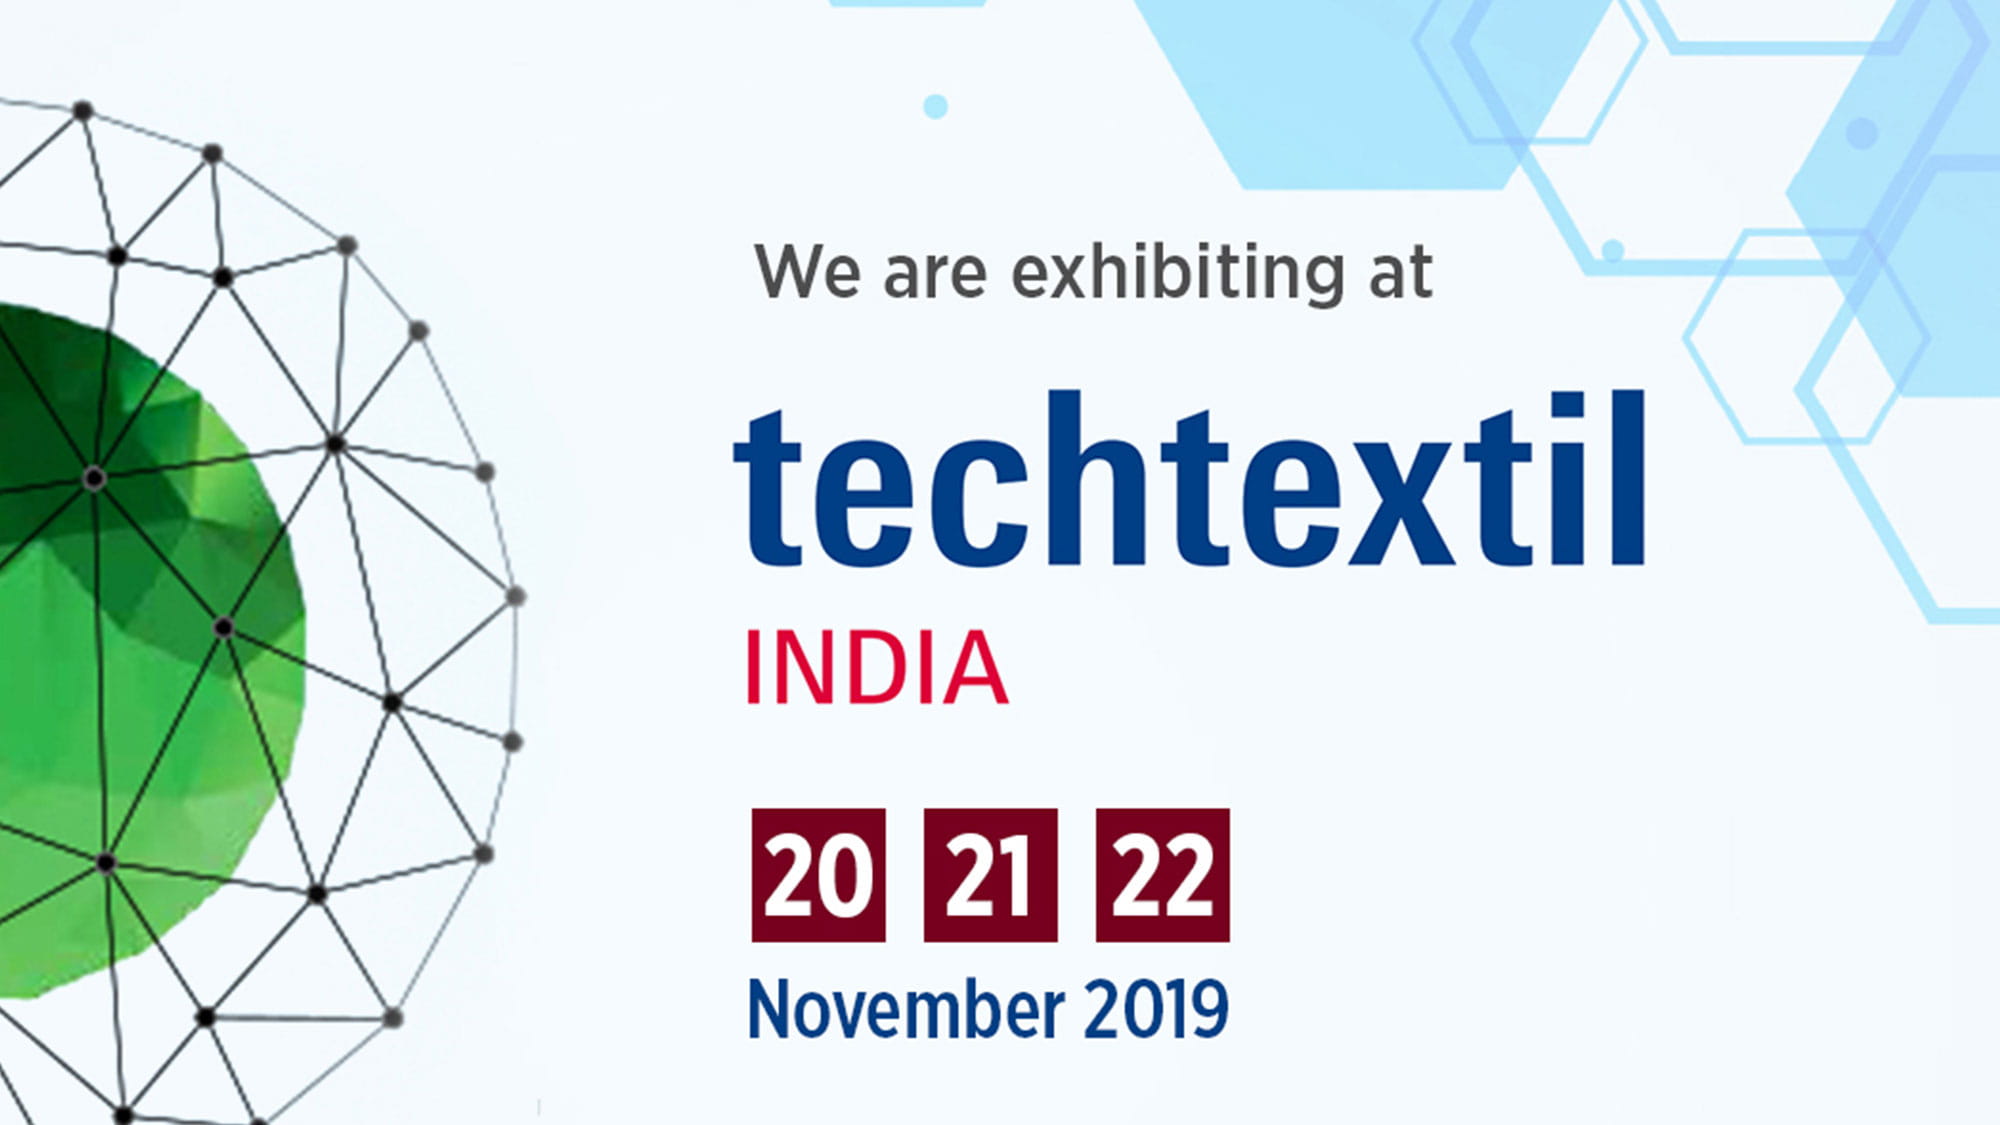 Visit us at Techtextil India